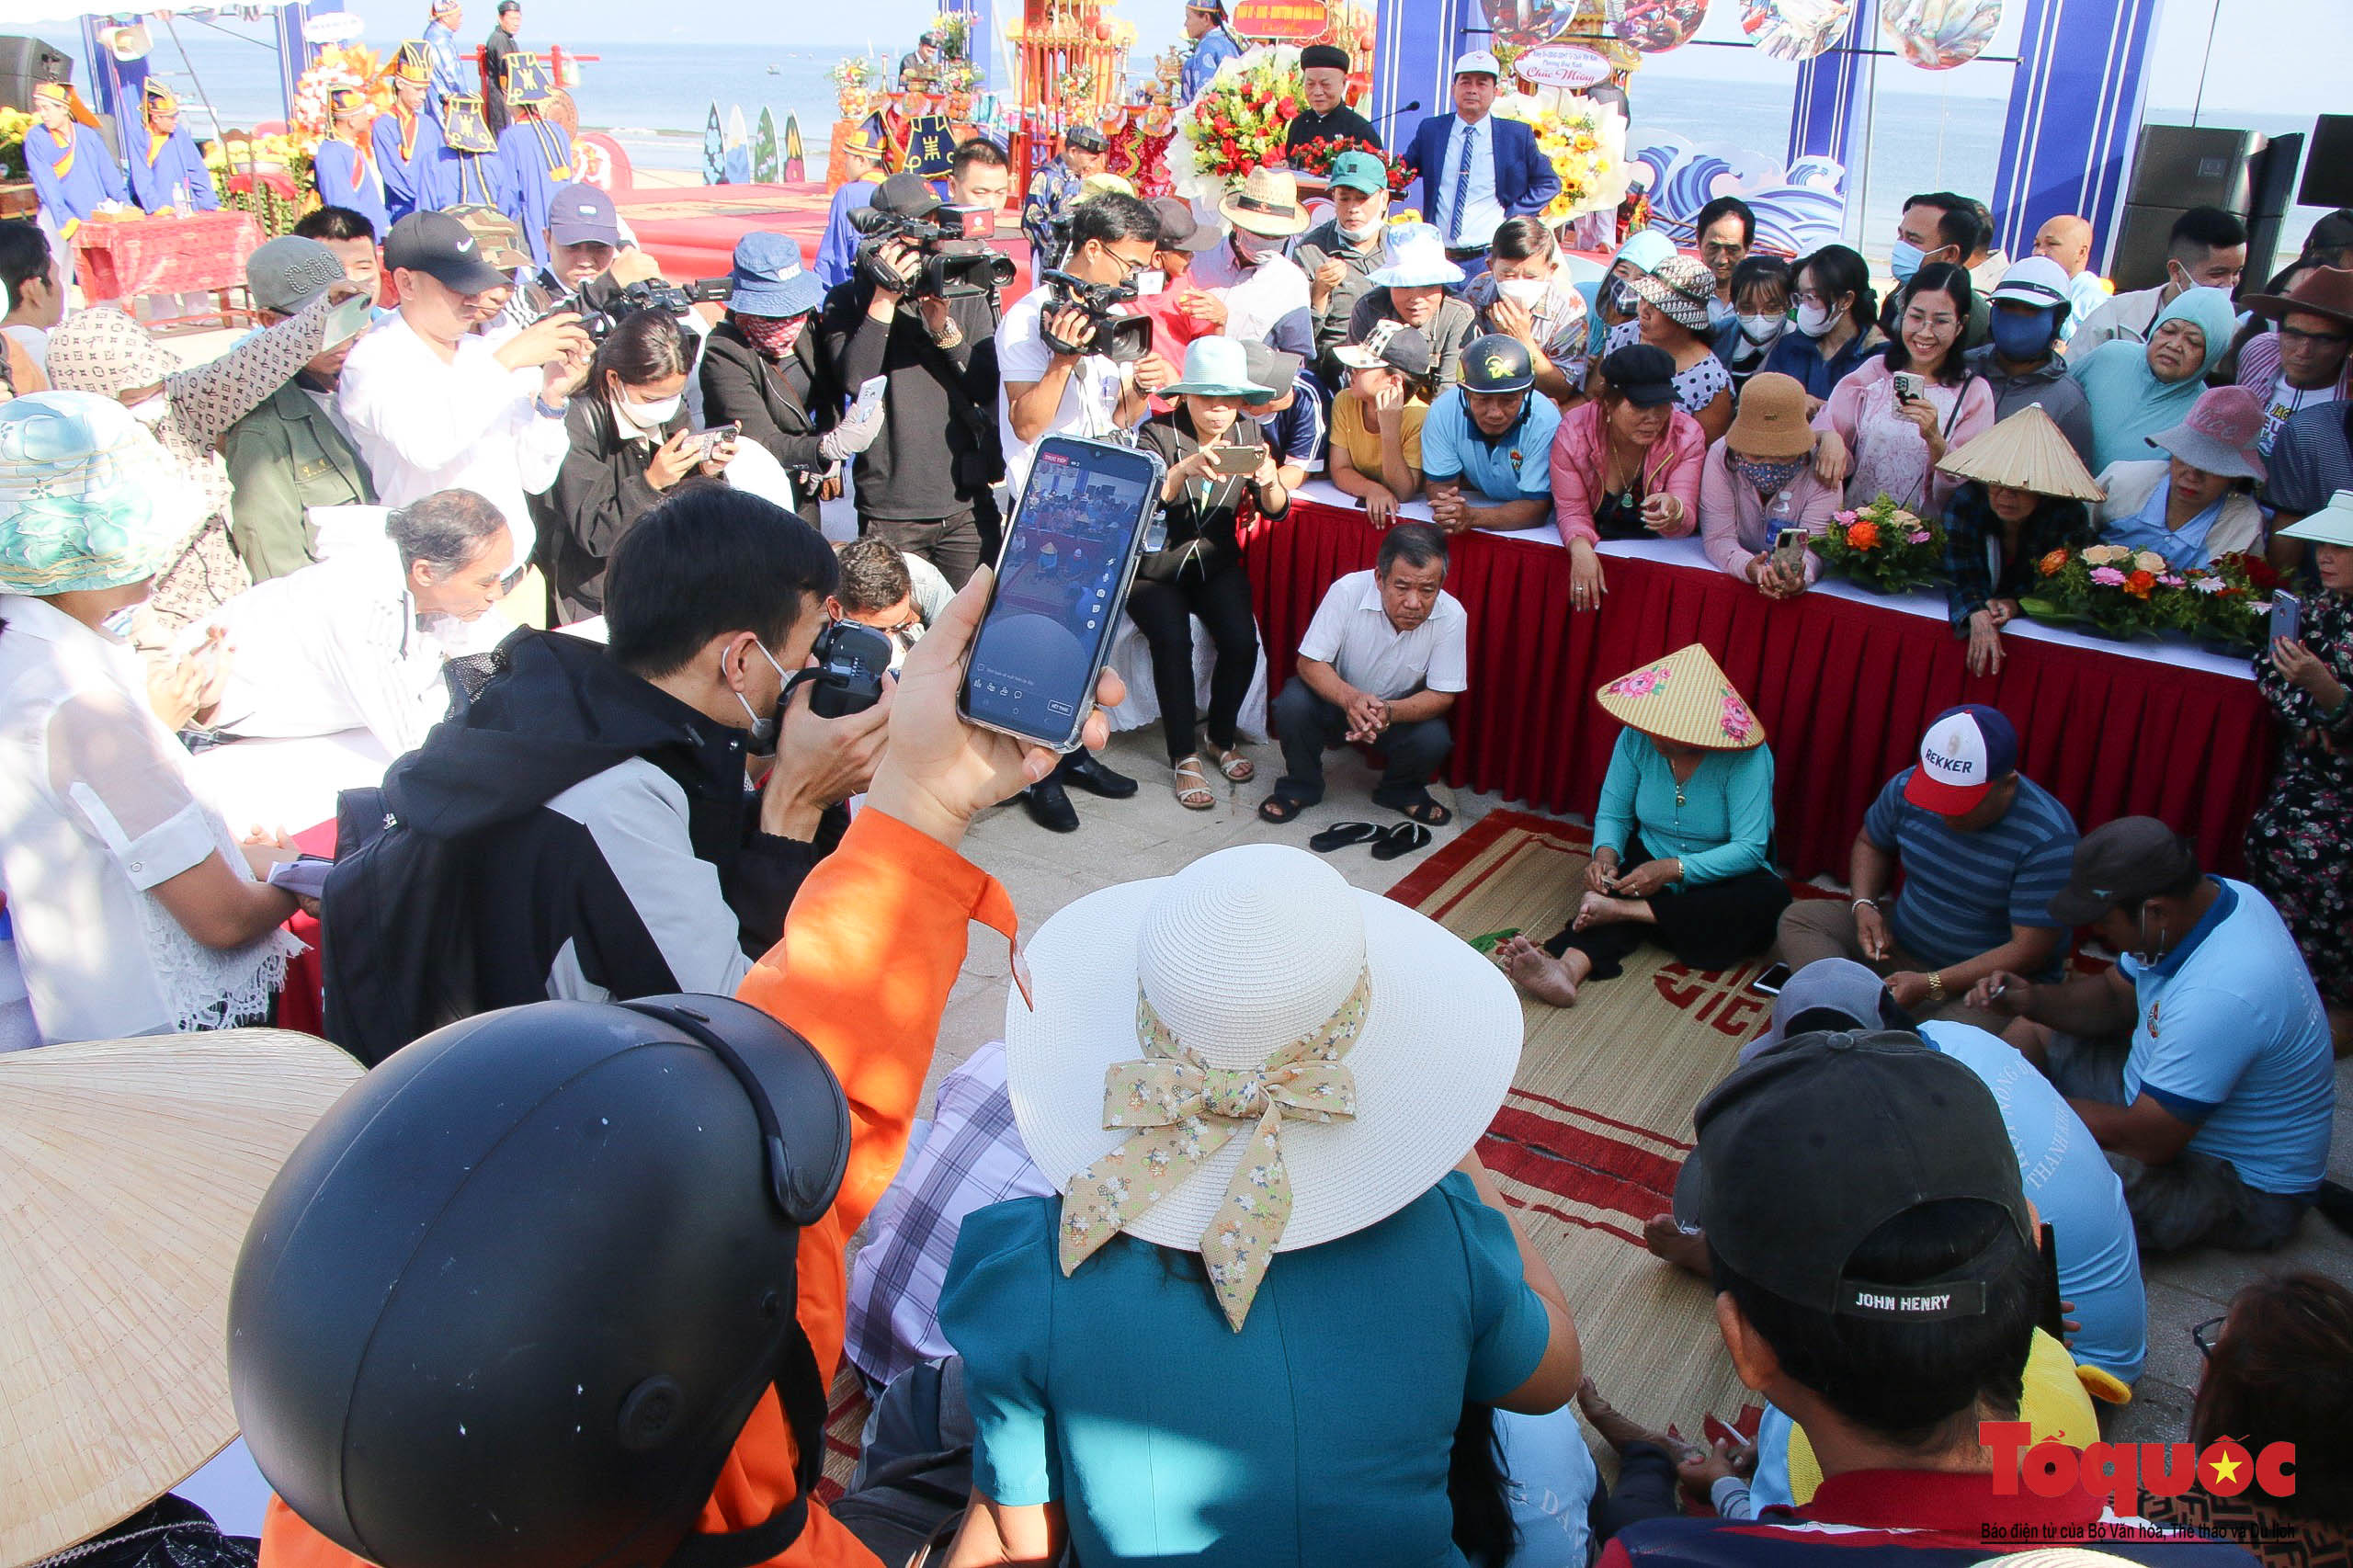 Du khách hào hứng tham gia lễ hội cầu ngư tại Đà Nẵng - Ảnh 13.